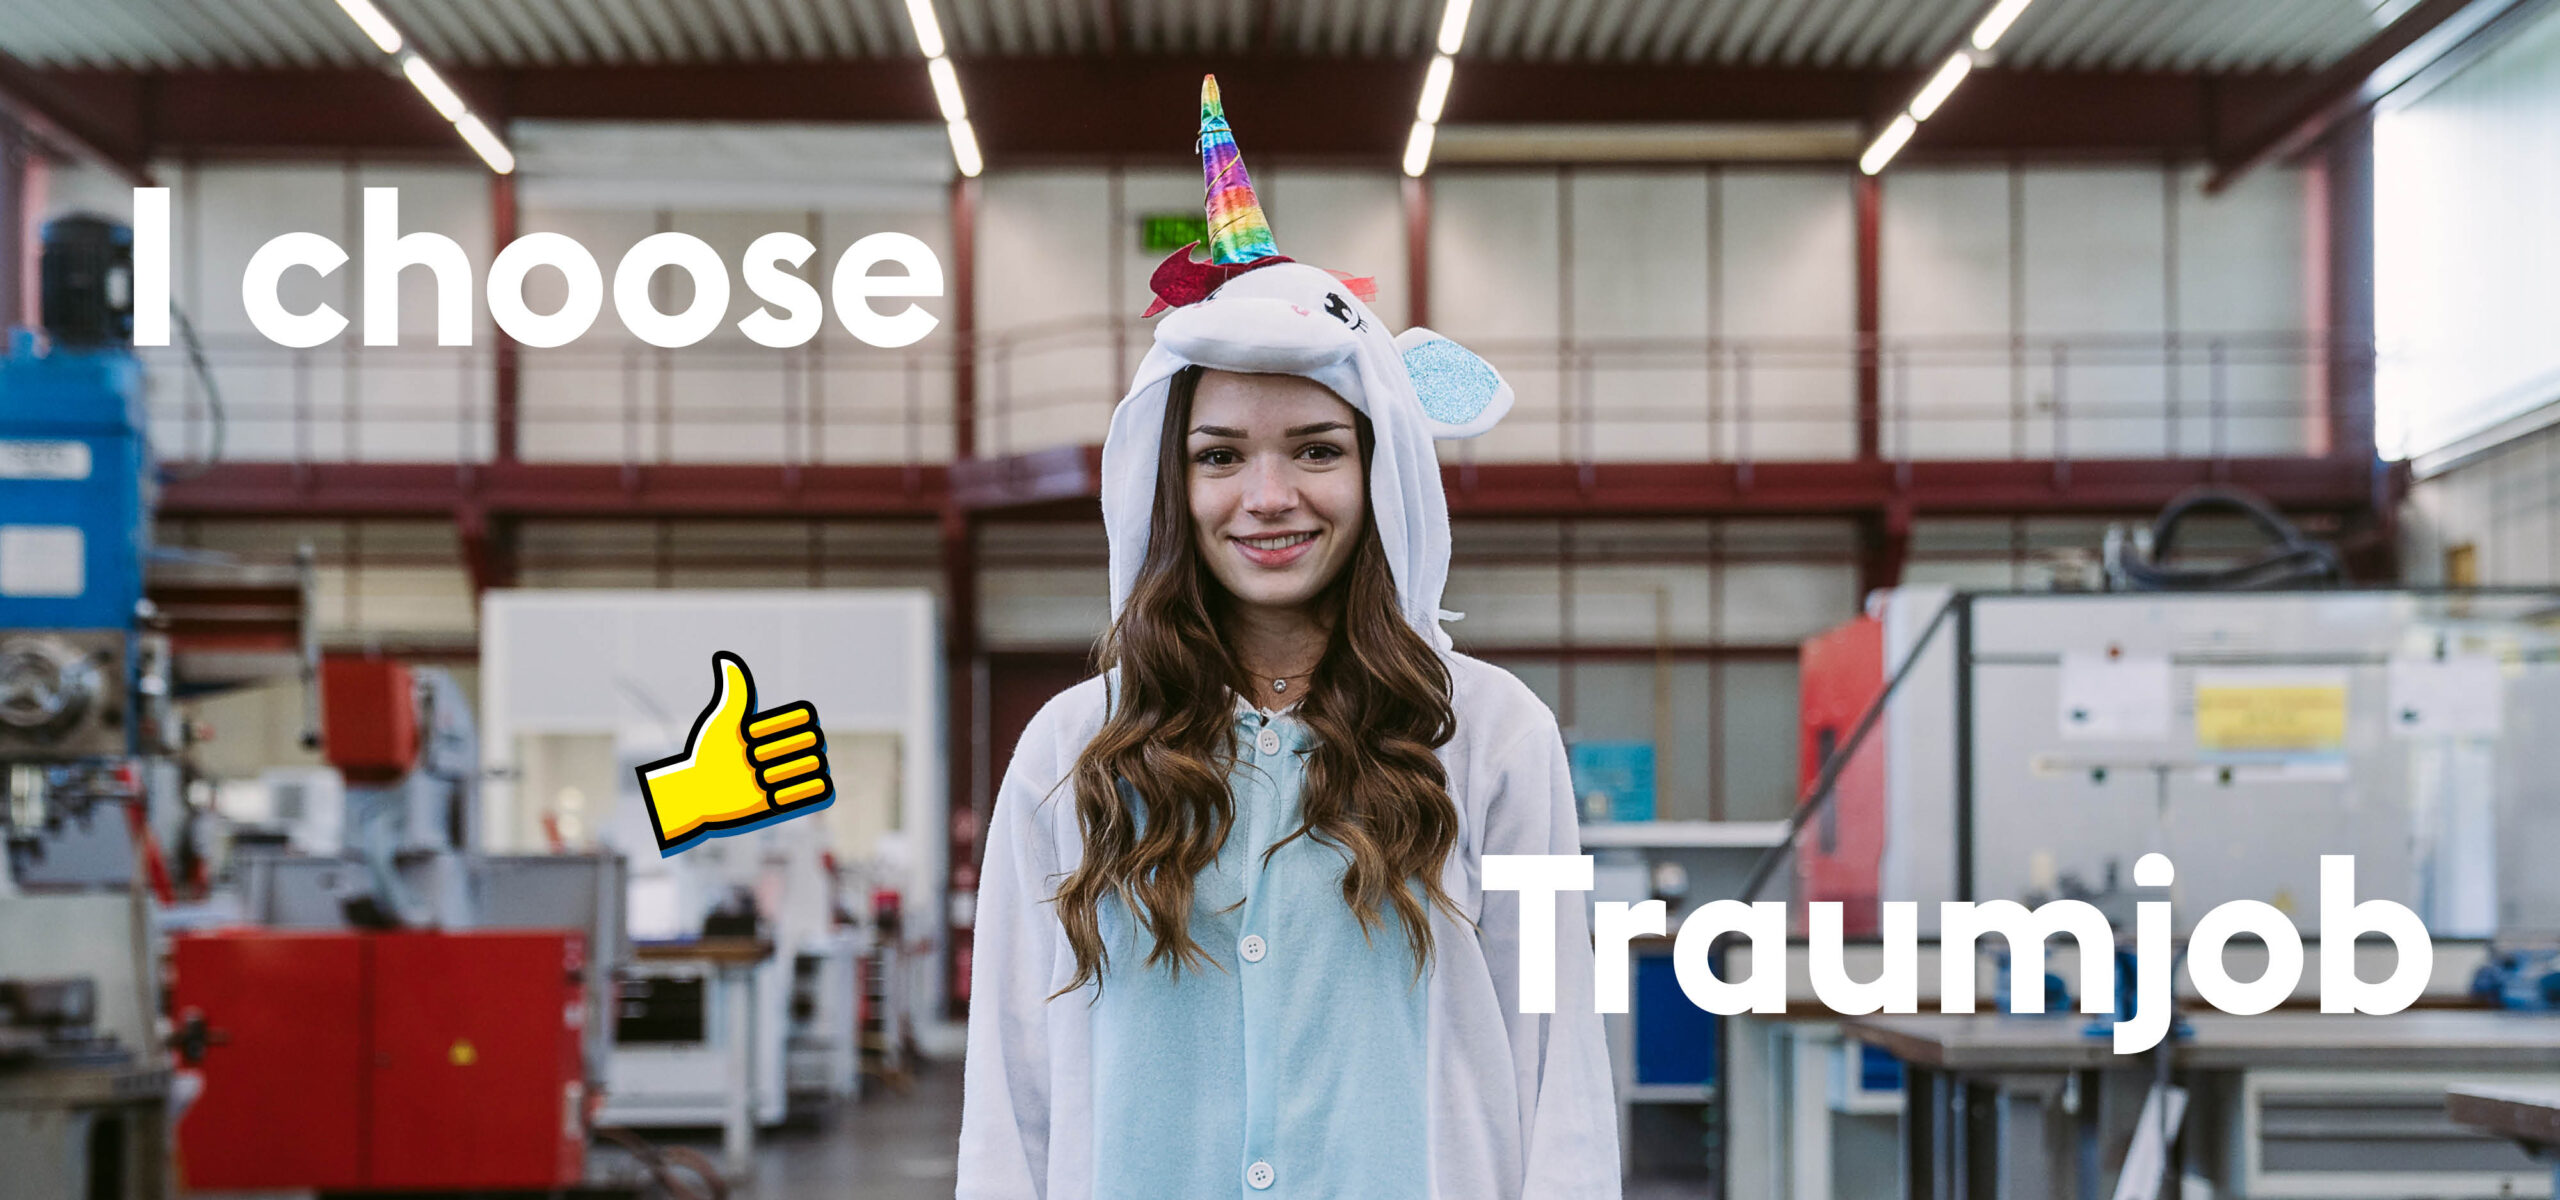 Ein Mädchen steht in einem Einhornkostüm in einen Ausbildungszentrum der voestalpine mit Headline "I choose Traumjob" und Daumen-hoch-Emoji